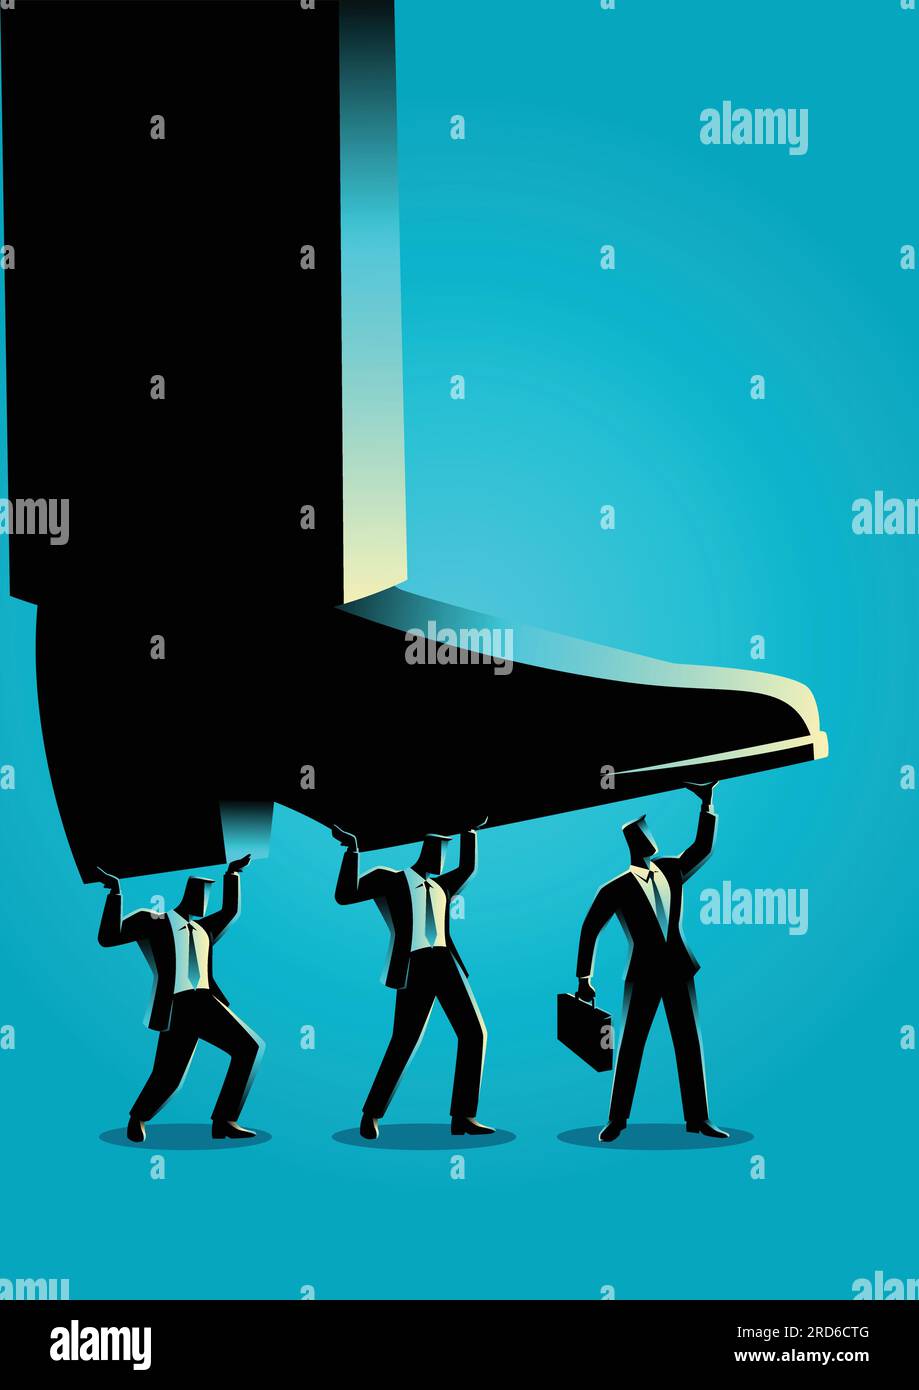 Business Concept vettore illustrazione di uomini d'affari che cercano di sollevare piede gigante Illustrazione Vettoriale